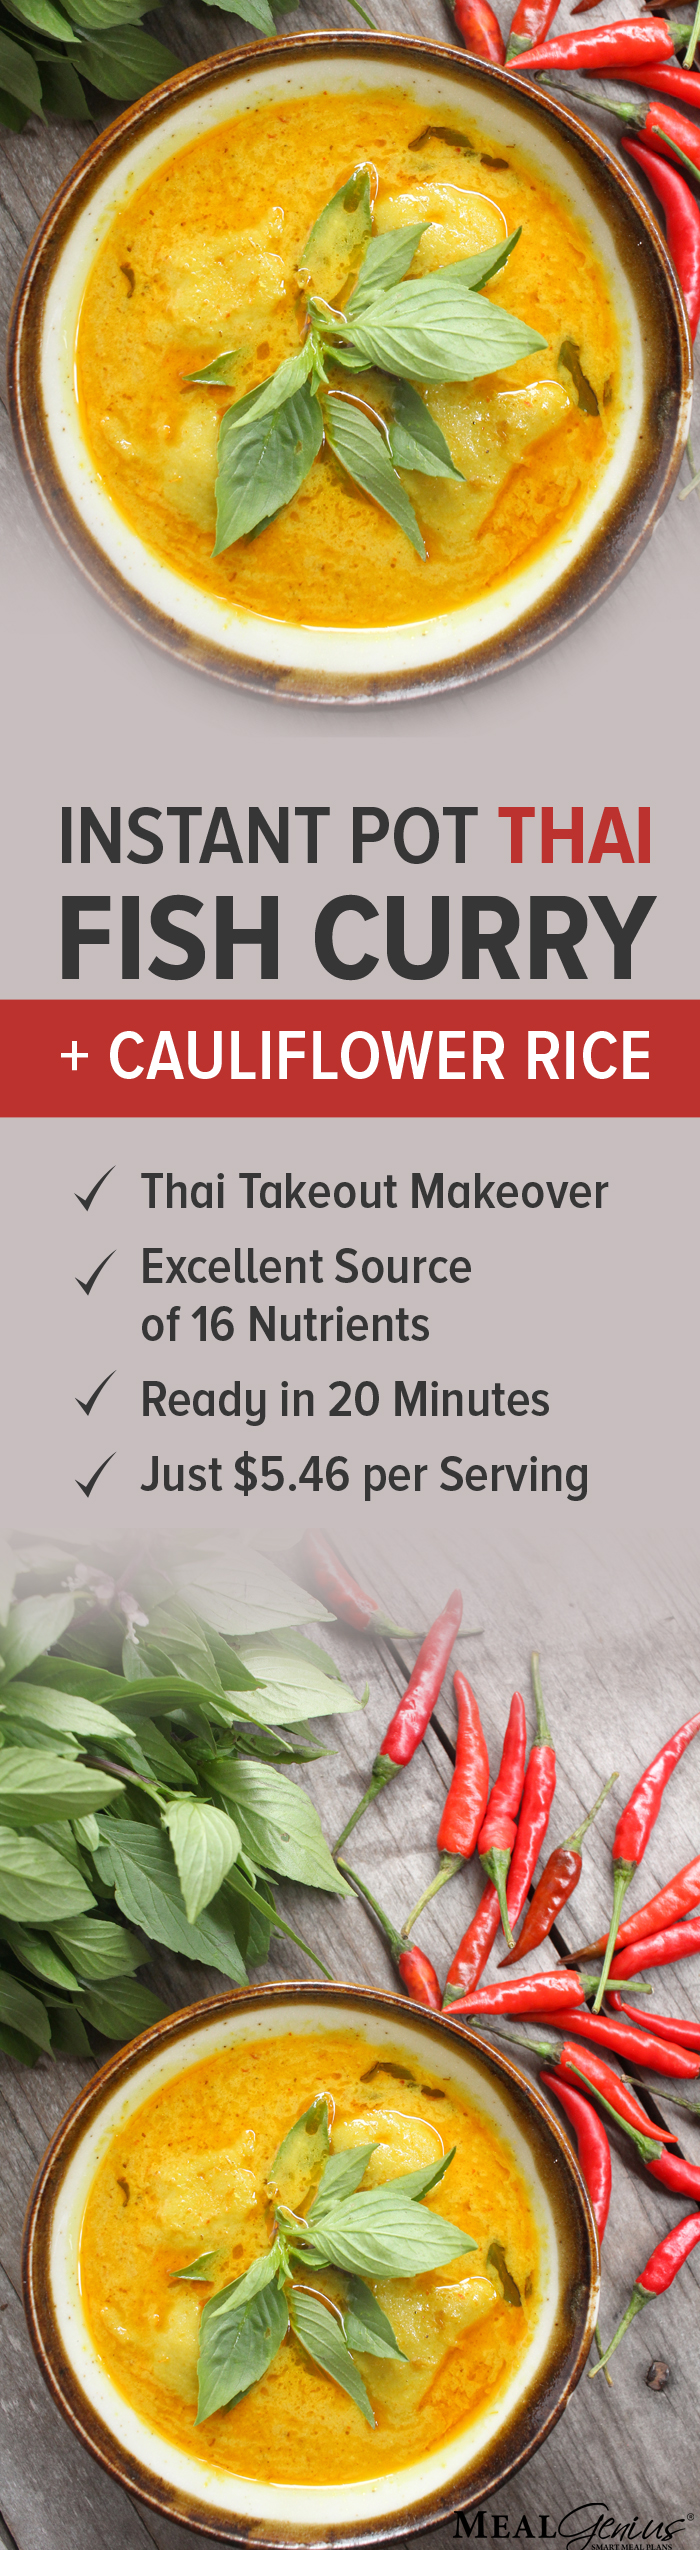 Instant Pot Thai Fish Curry - Meal Genius